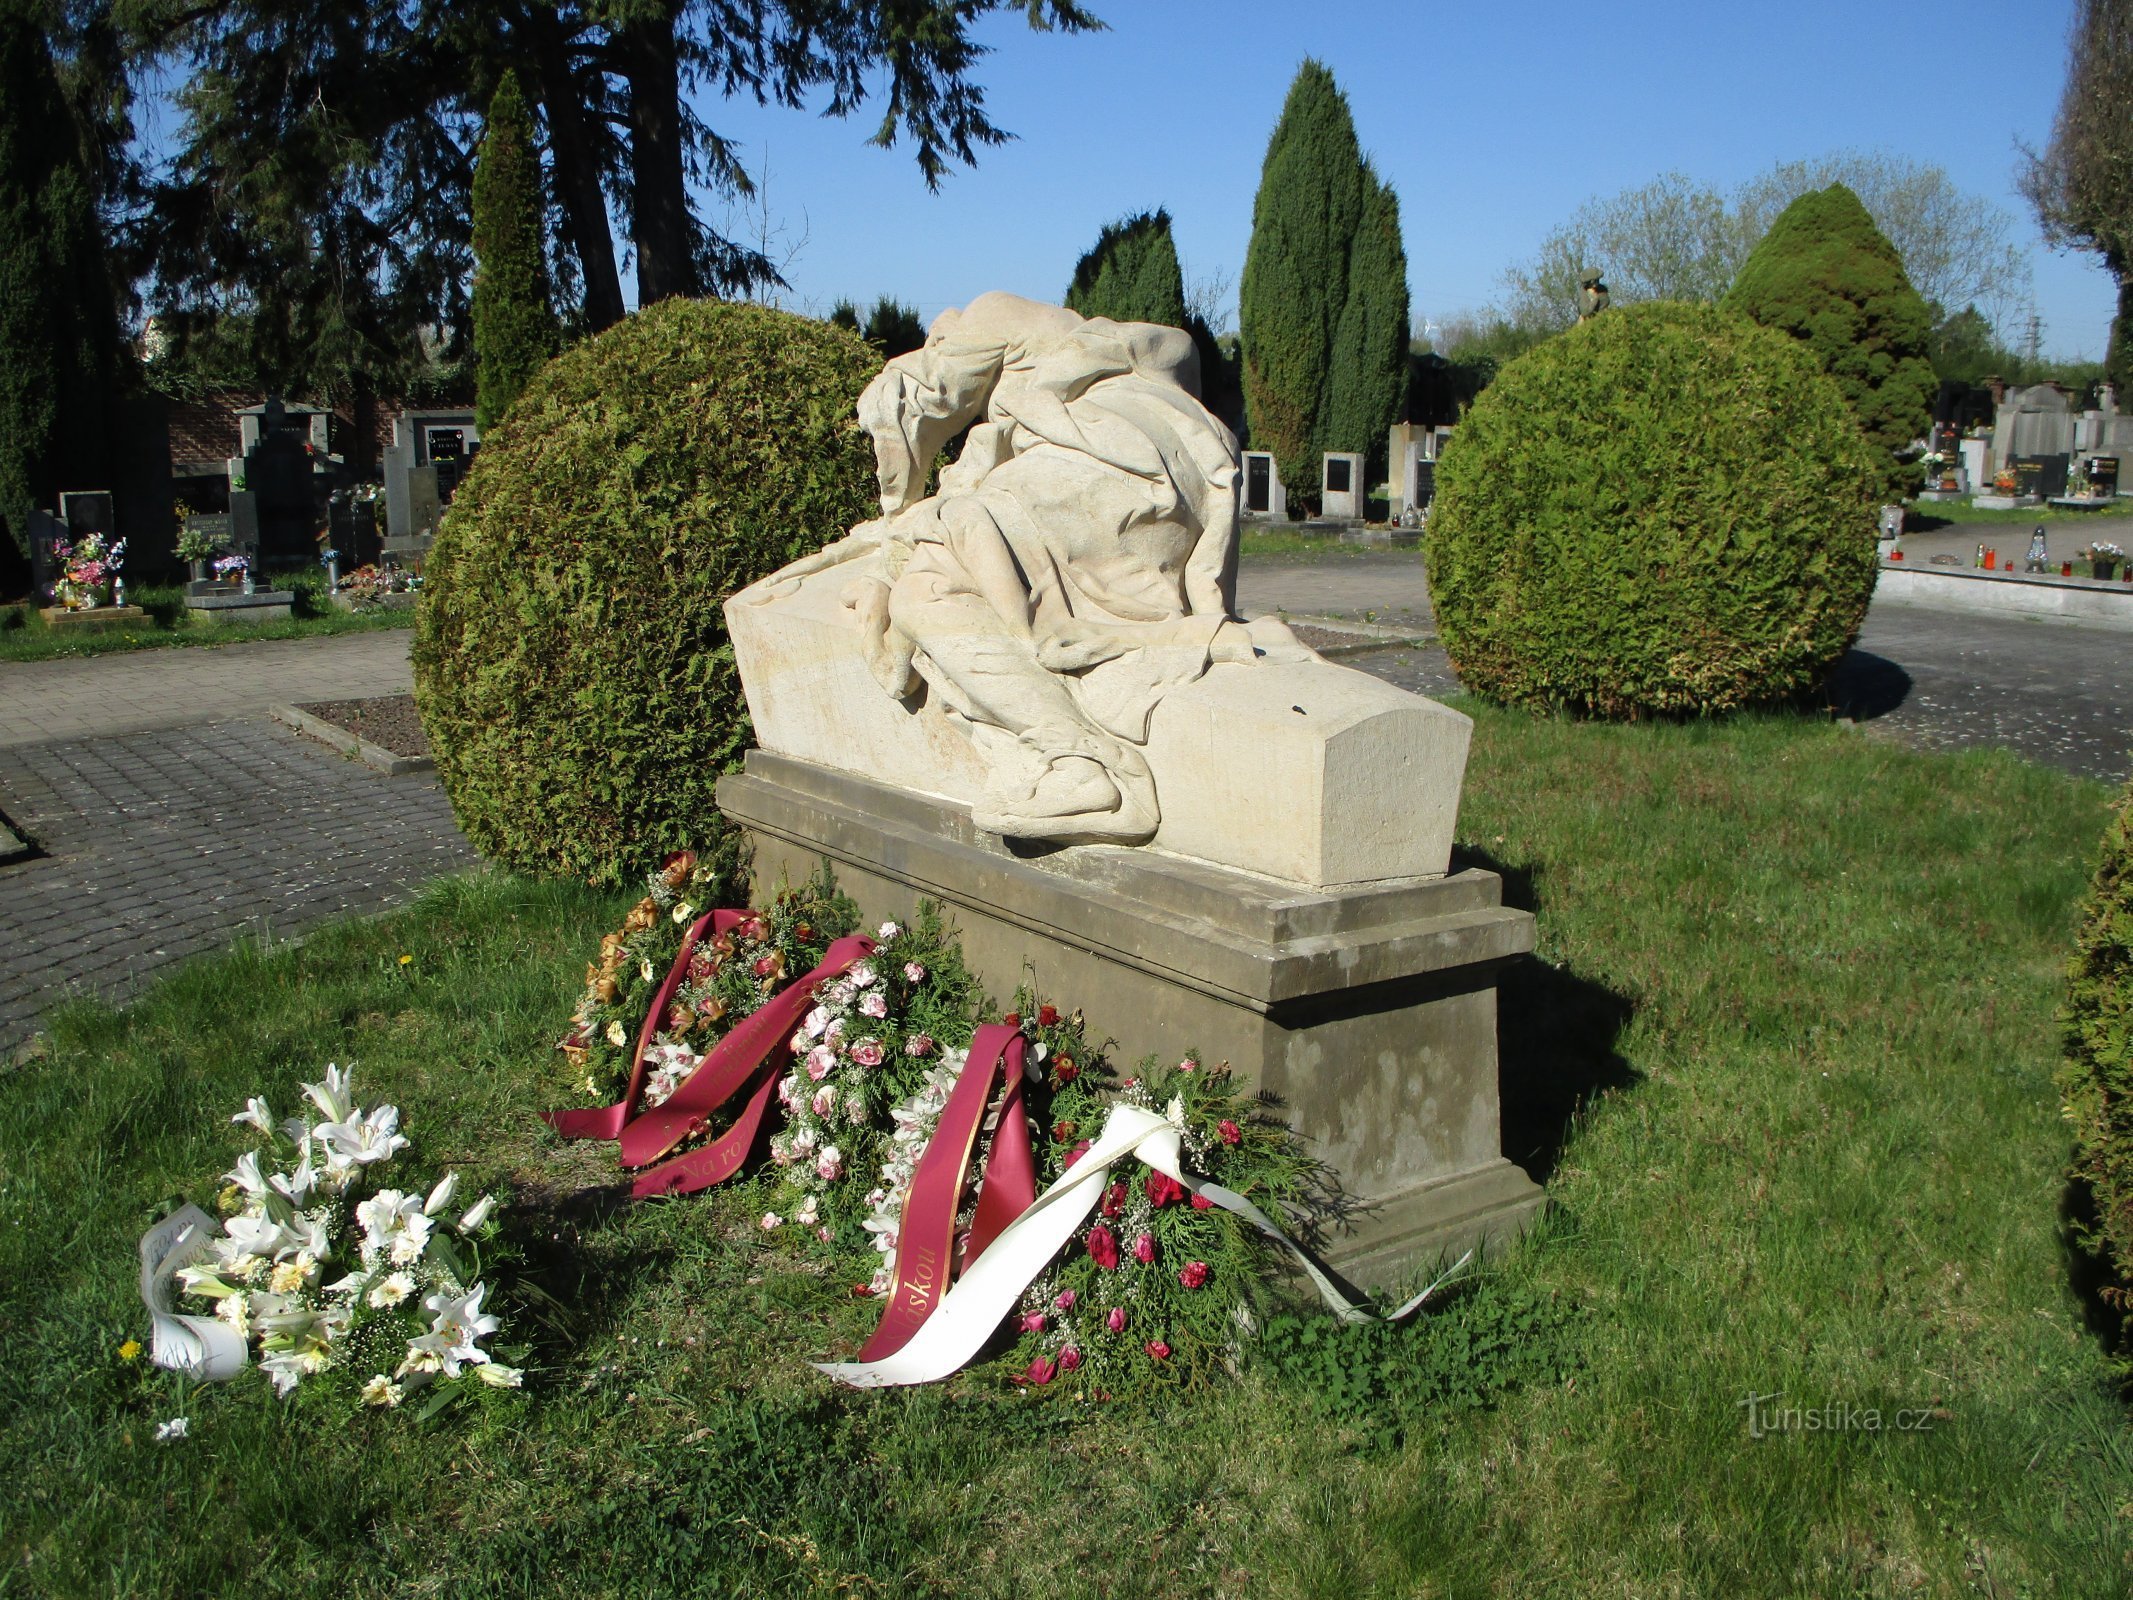 Pomnik "Płaczące kobiety" (Jaroměř, 22.4.2020)